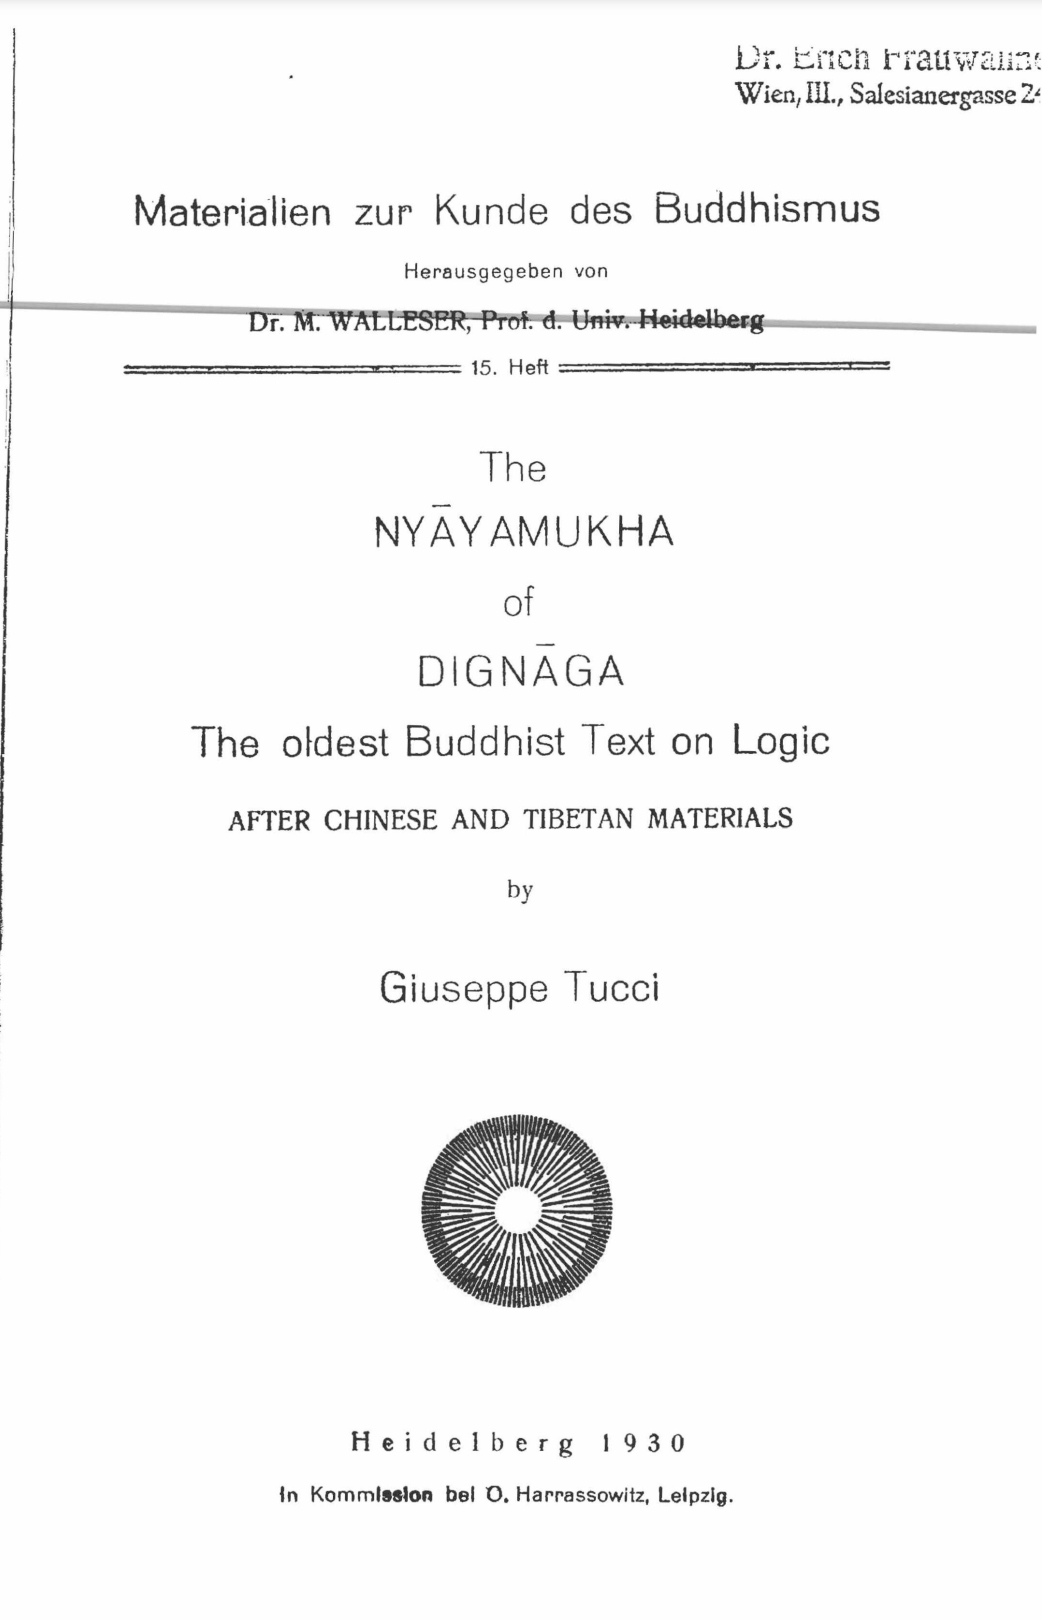 The Nyayamukha of Dignaga-front.jpg